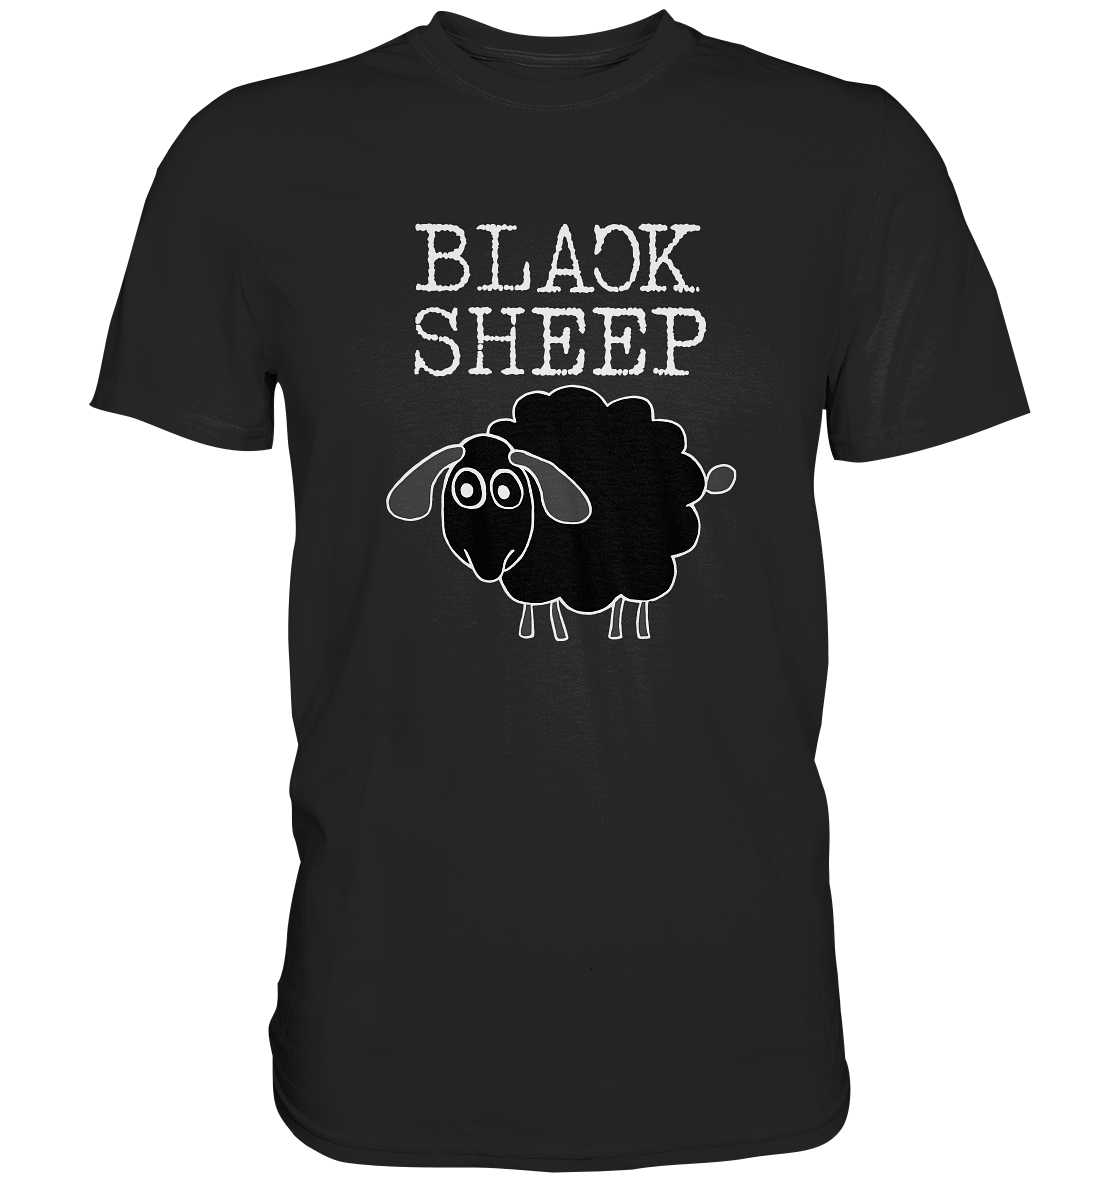 Black Sheep. Schwarzes Schaf - Premium Shirt